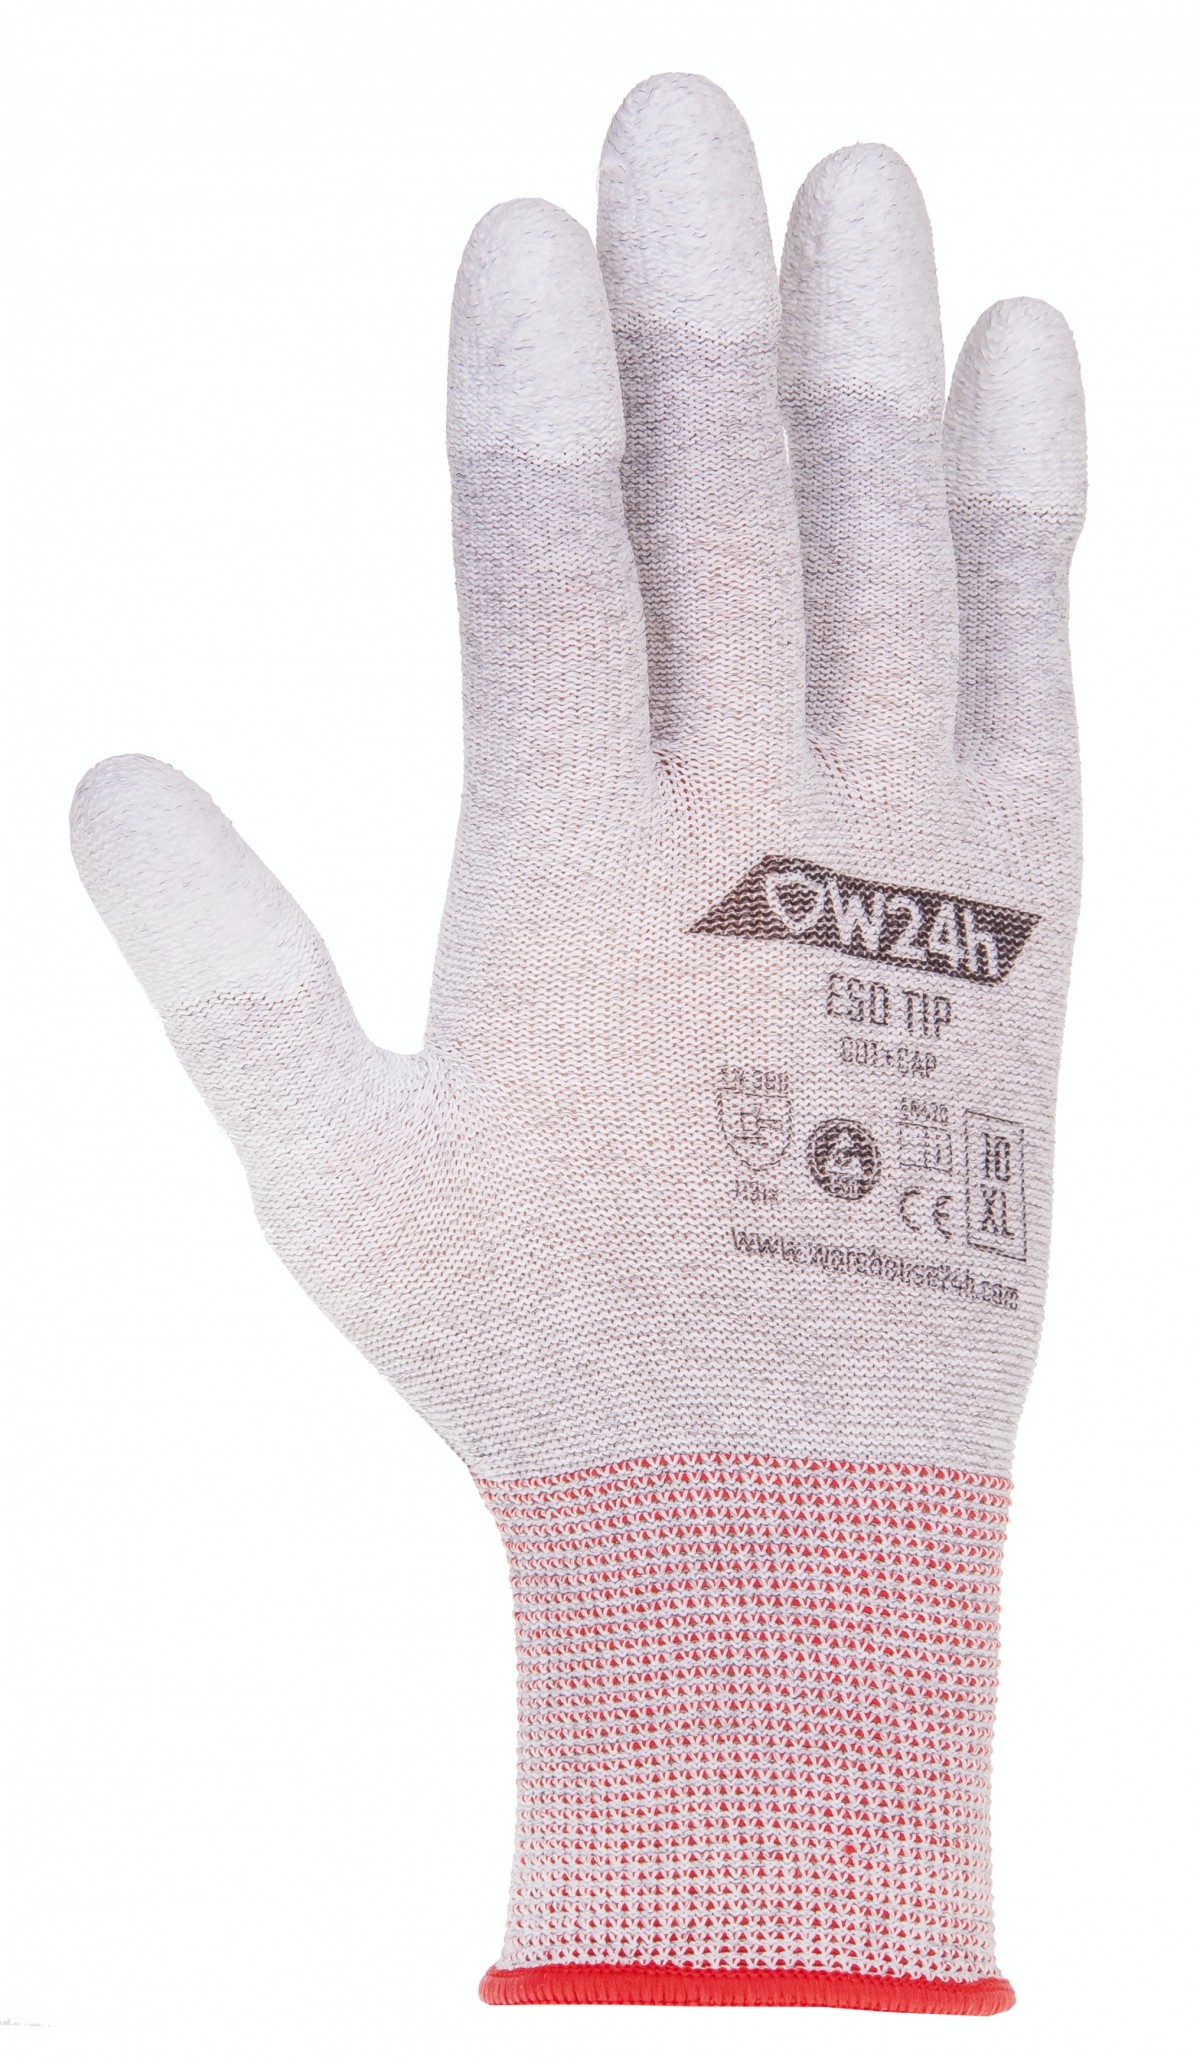 Safety glove ESD-TIP